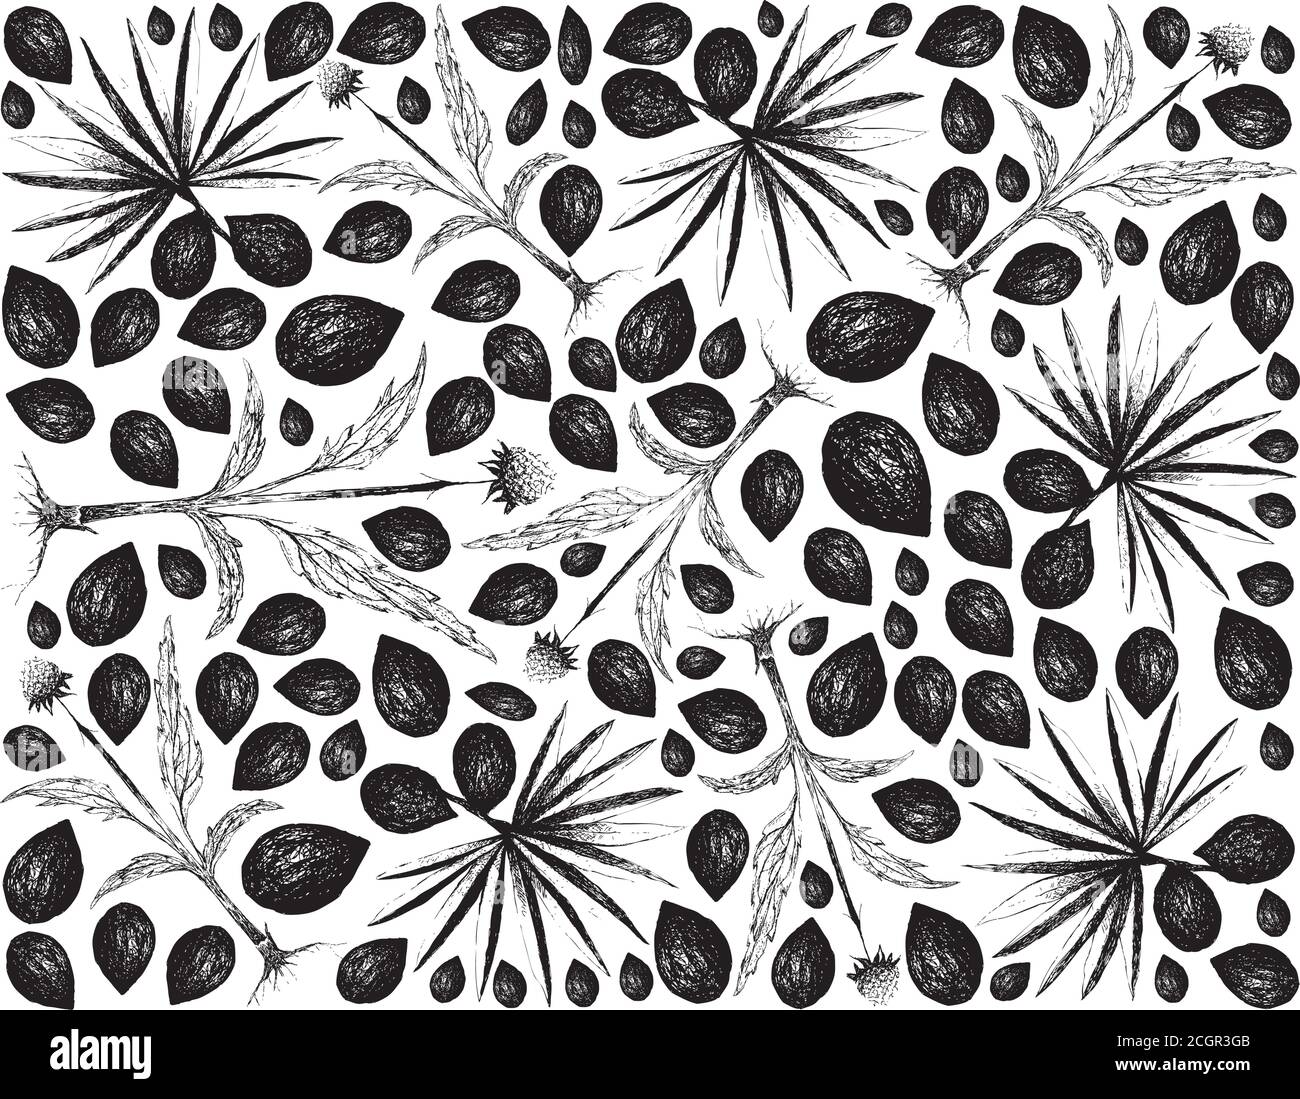 Kräuter und Pflanzen, handgezeichnete Illustration Hintergrund von Serenoa Repens oder Sägepalmettobeeren mit Echinacea oder Kegelblumen Pflanzen. Stock Vektor